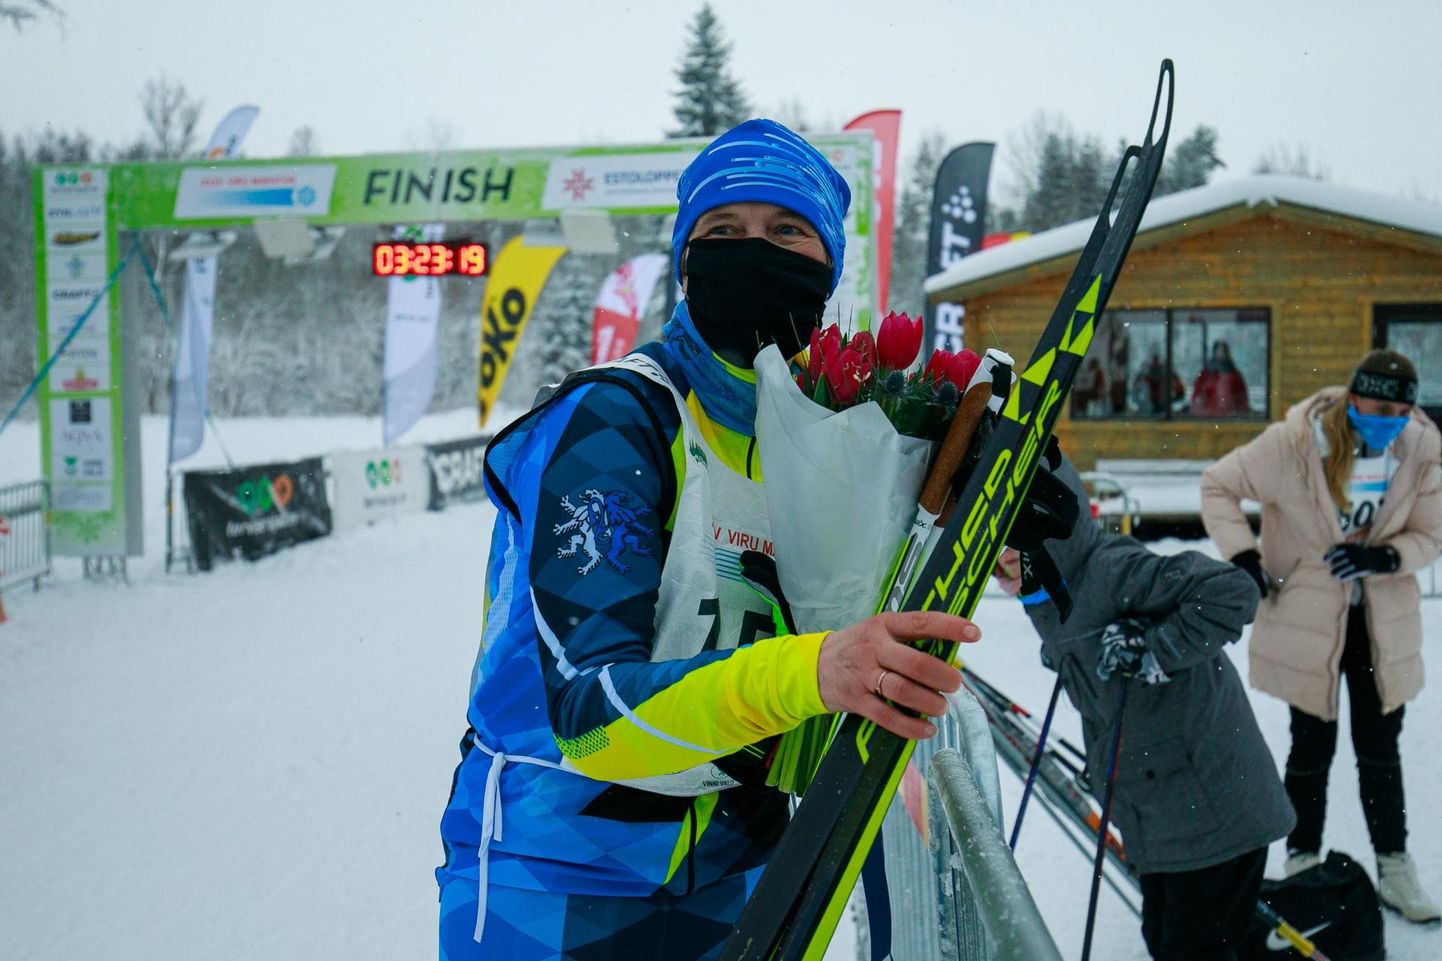 Viru suusamaratoni väisas teiste hulgas spordilembene president Kersti Kaljulaid.